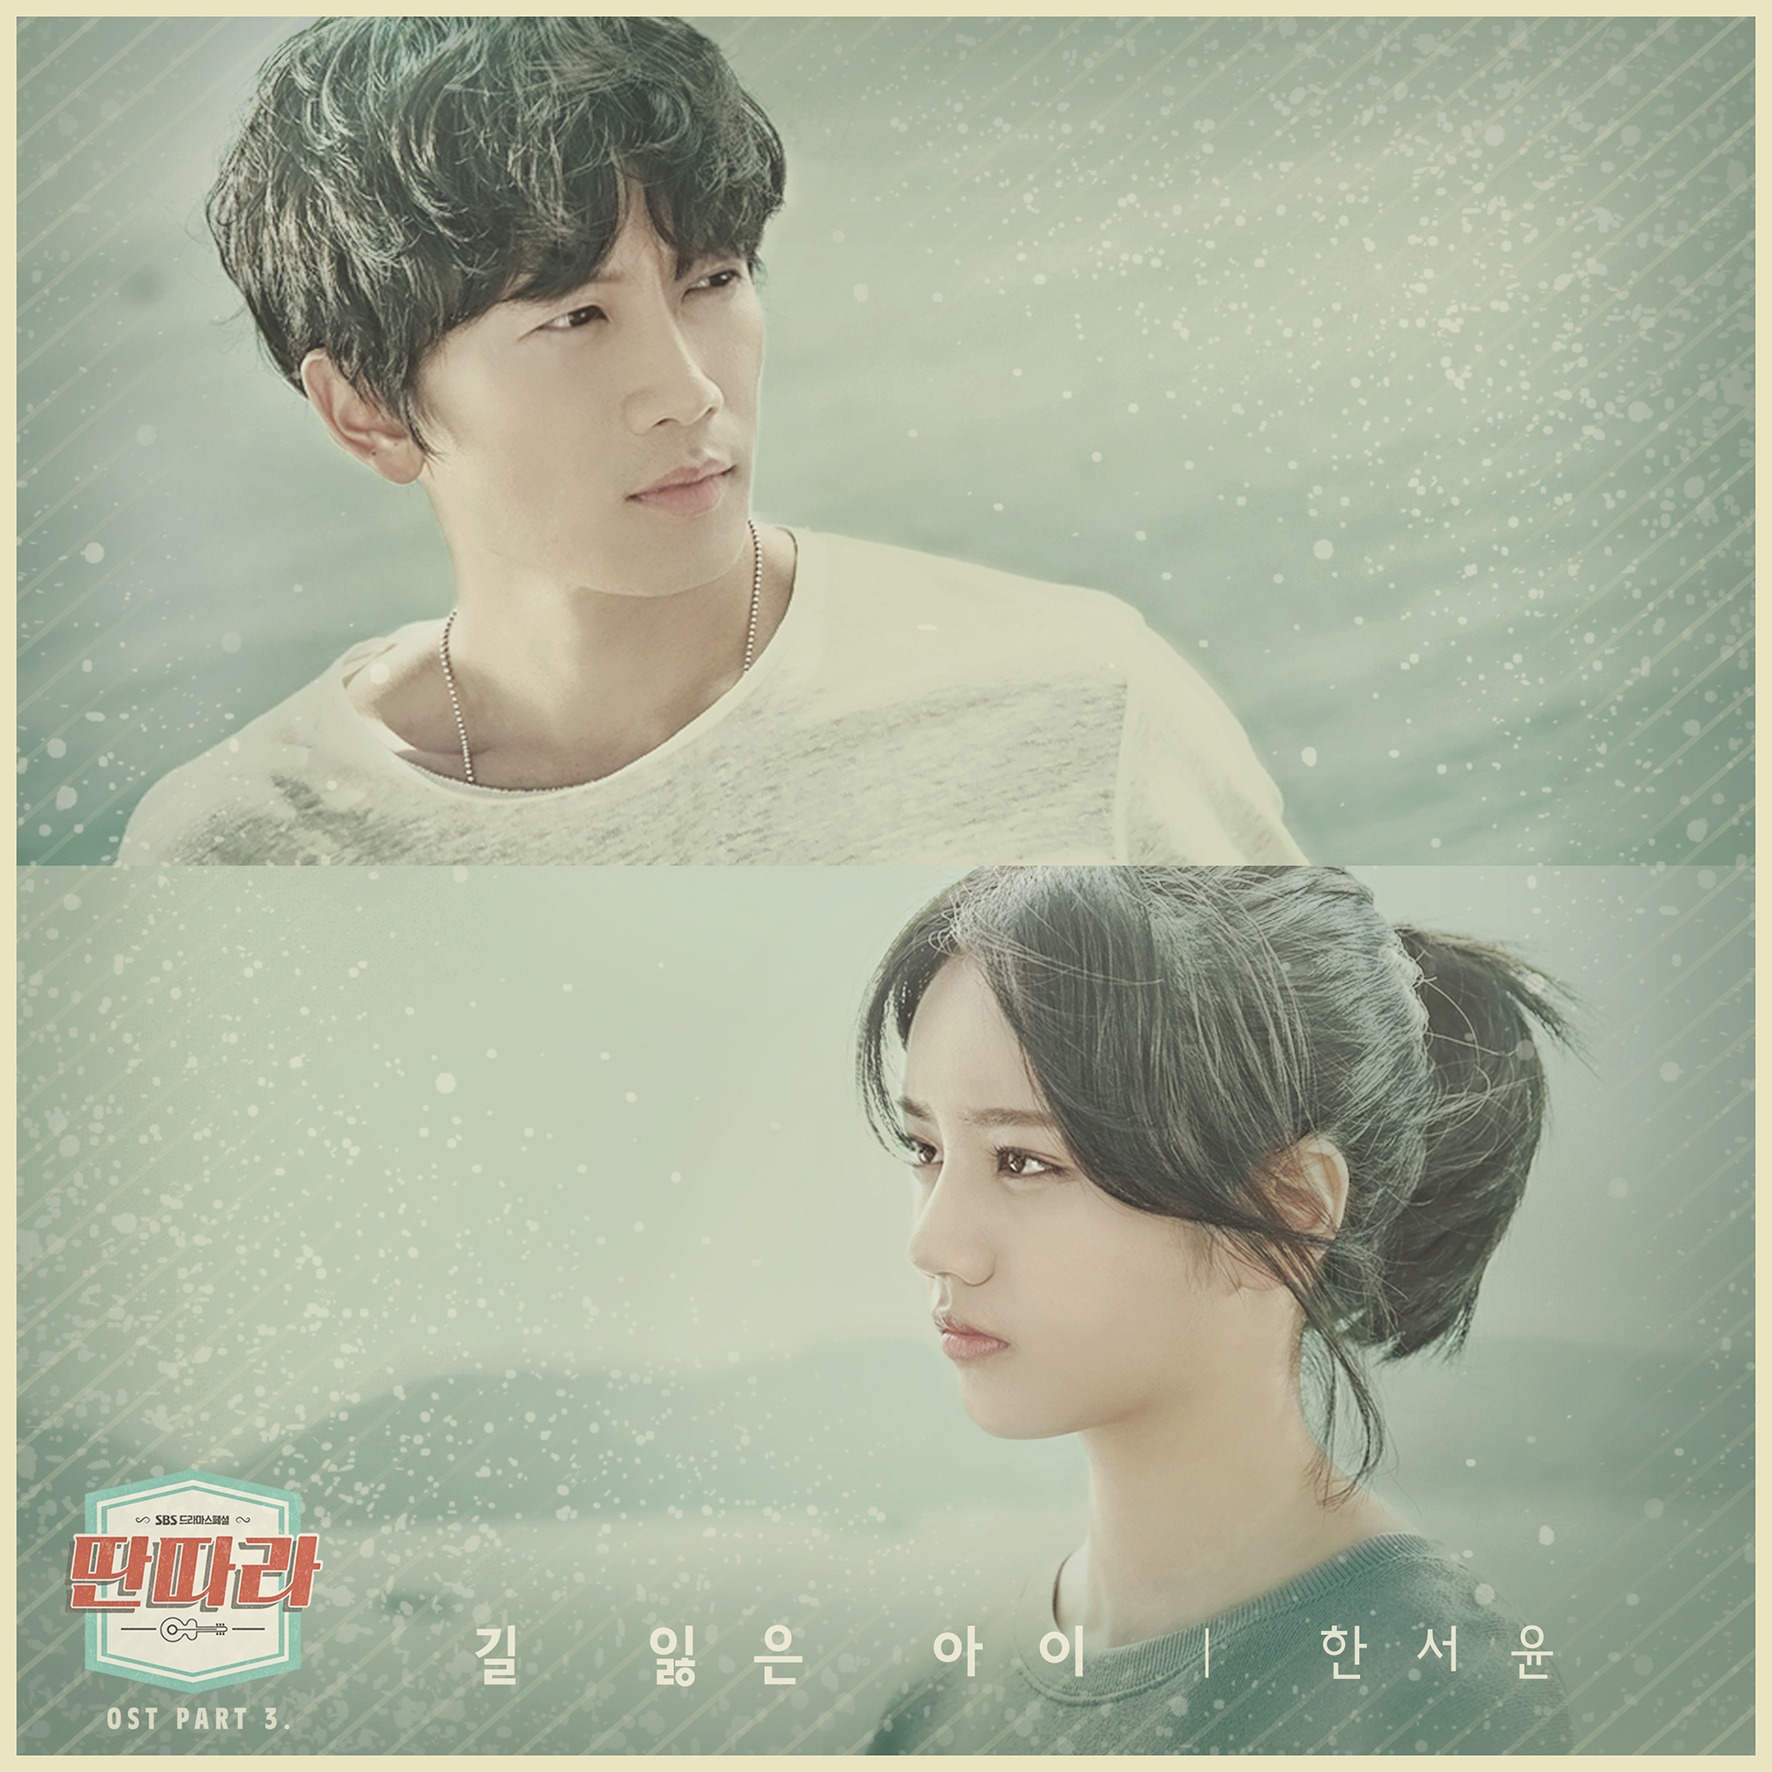 [影音] 戲子 OST Part.3 - Han Seo Yoon